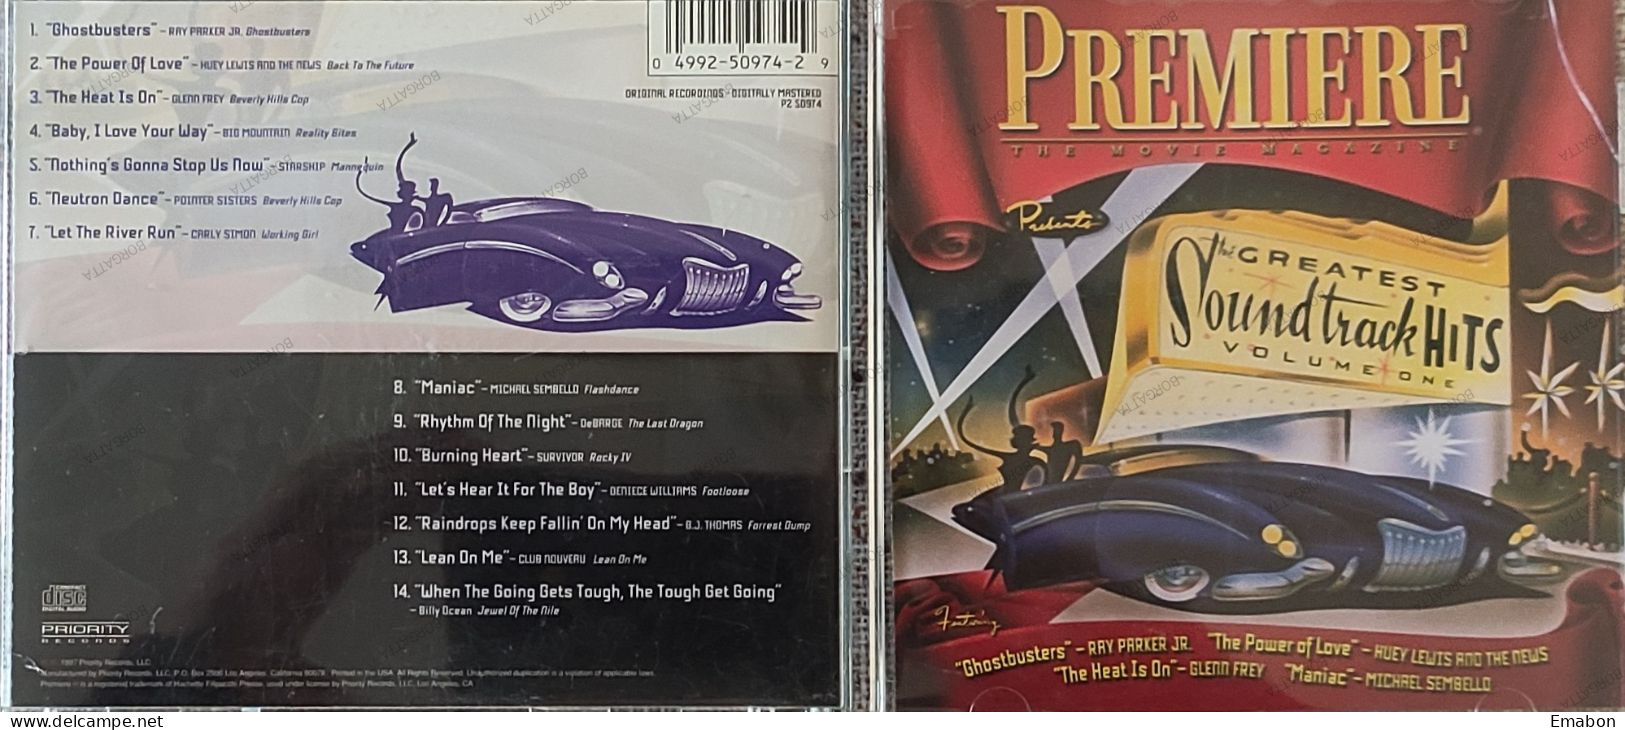 BORGATTA - FILM MUSIC - Cd PREMIERE - GREATEST SOUNDTRACK HITS VOLUME ONE - PRIORITY RECORDS 1997- USATO In Buono Stato - Musique De Films